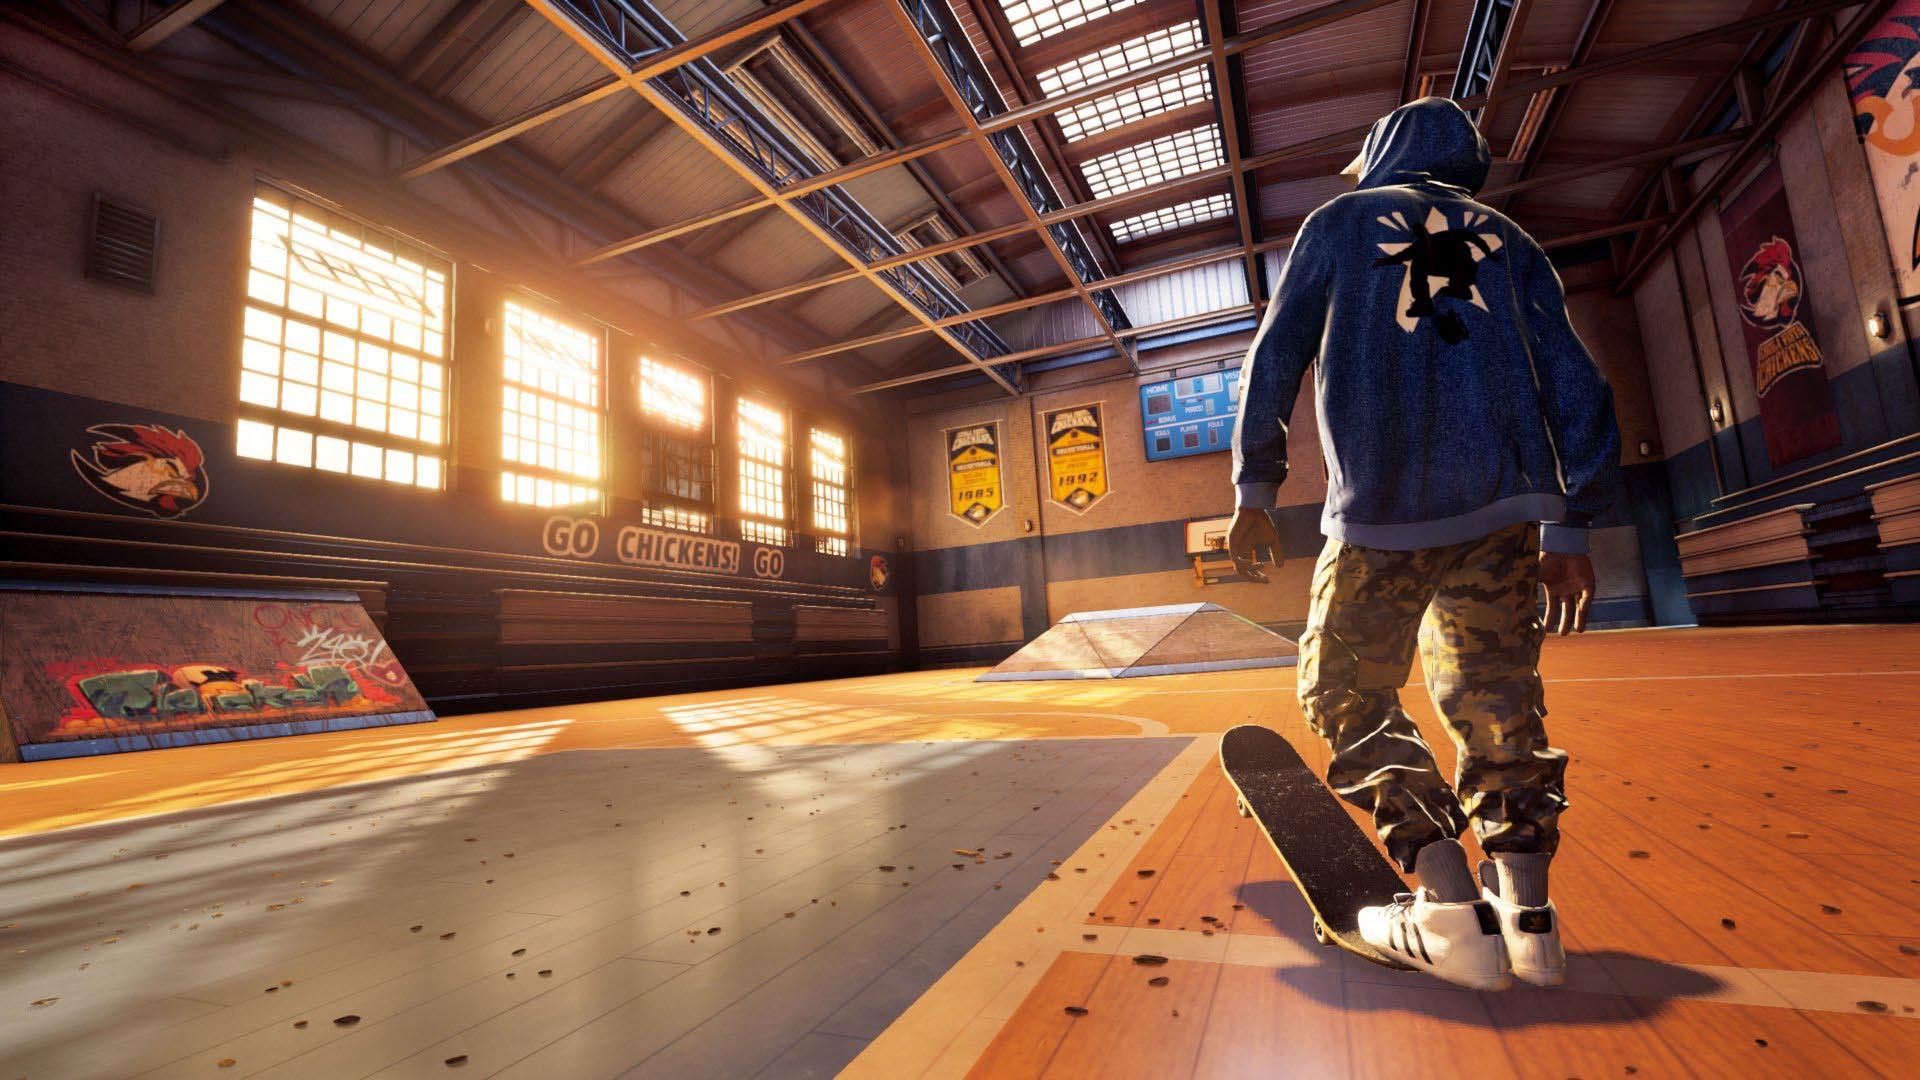 اکتیویژن بازسازی بازی های Pro Skater تونی هاوک را ممنوع کرده است